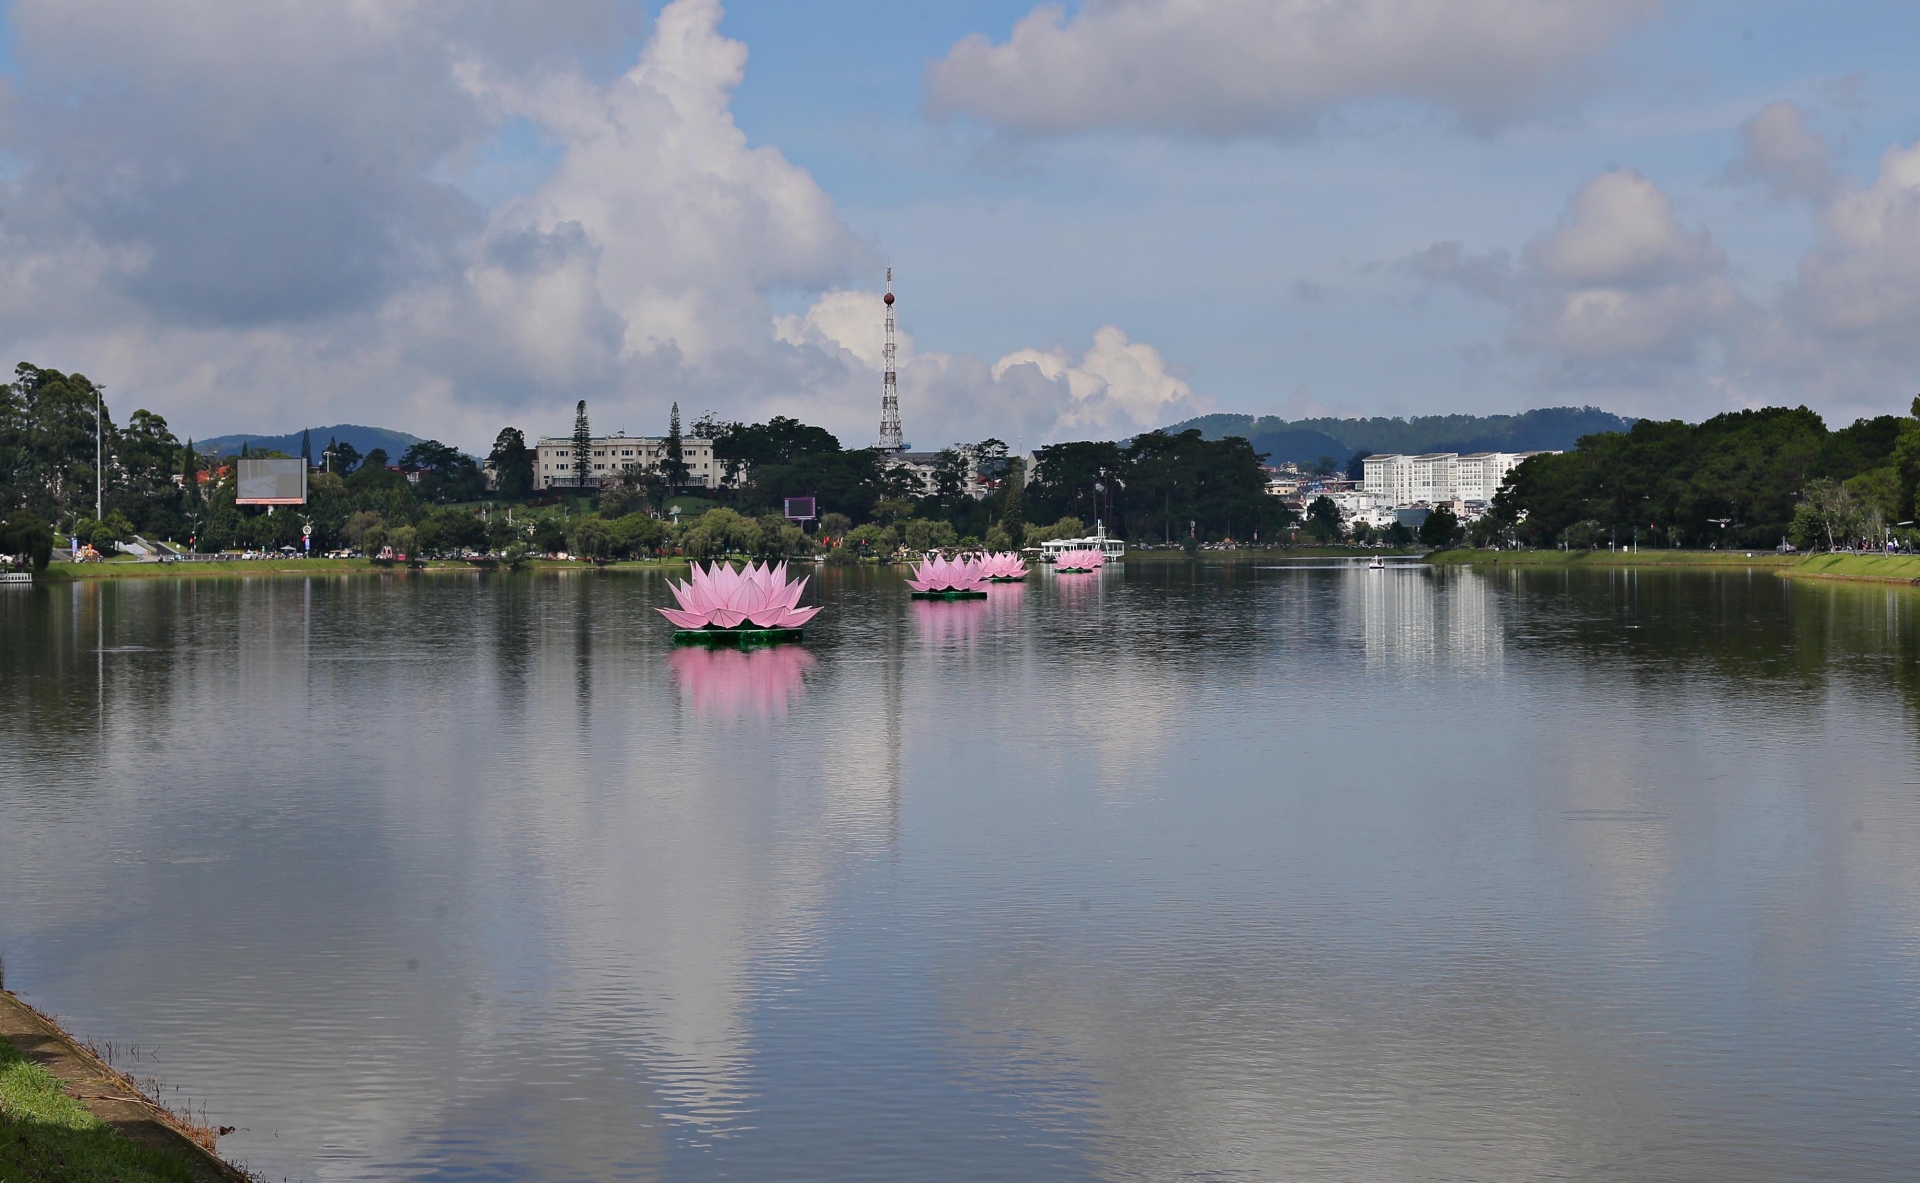 Bảy đóa hoa sen khổng lồ được hạ thủy trên hồ Xuân Hương, TP Đà Lạt trở thành điểm nhấn thú vị trong mùa Phật đản năm nay